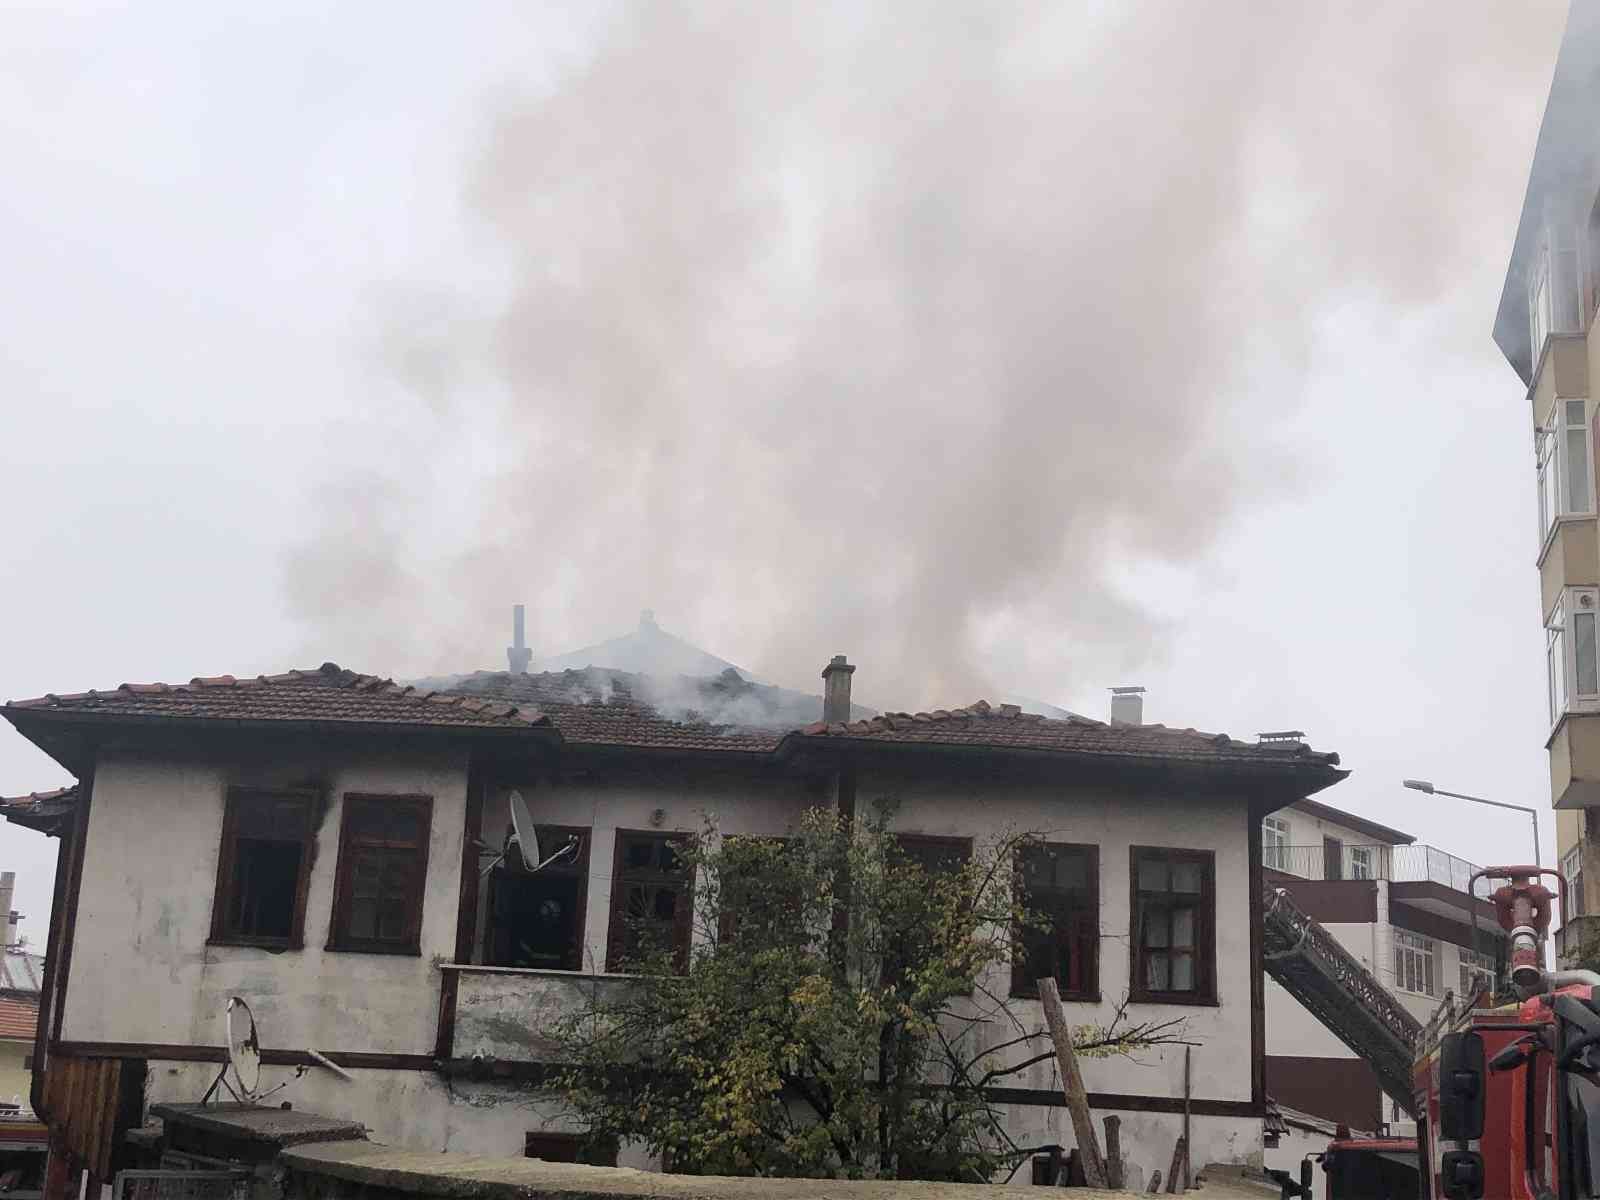 Yabancı uyruklu ailenin yaşadığı ki katlı ahşap ev yandı: 3 yaralı #kastamonu